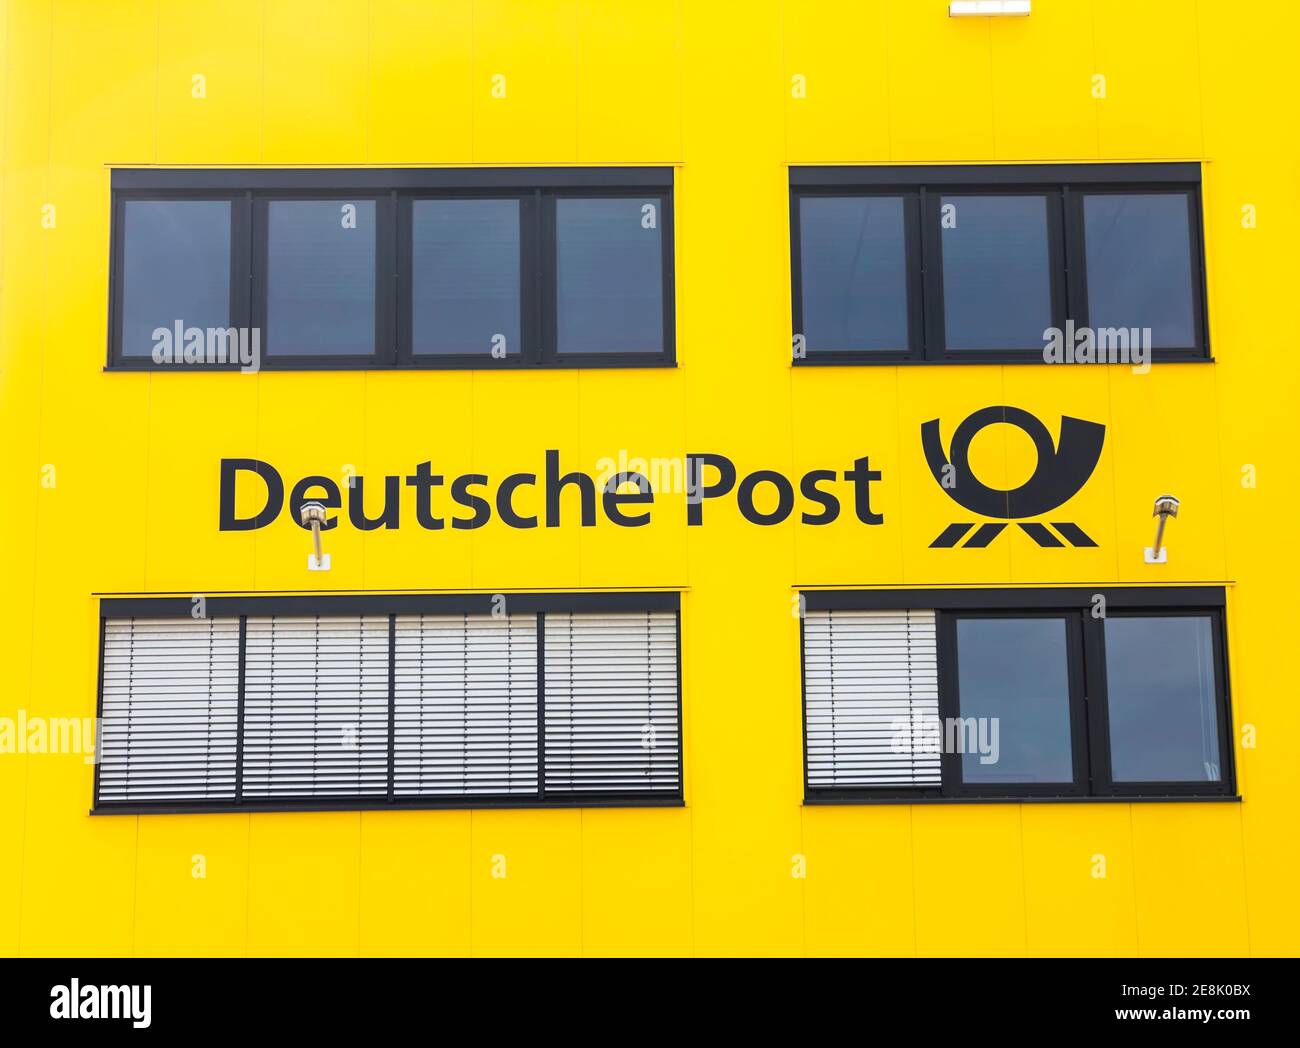 Furth, Deutschland : DEUTSCHE POST Frachtterminal und Logo auf dem Gebäude die Deutsche Post AG ist ein deutsches Kurierunternehmen und das größte weltweit. Stockfoto